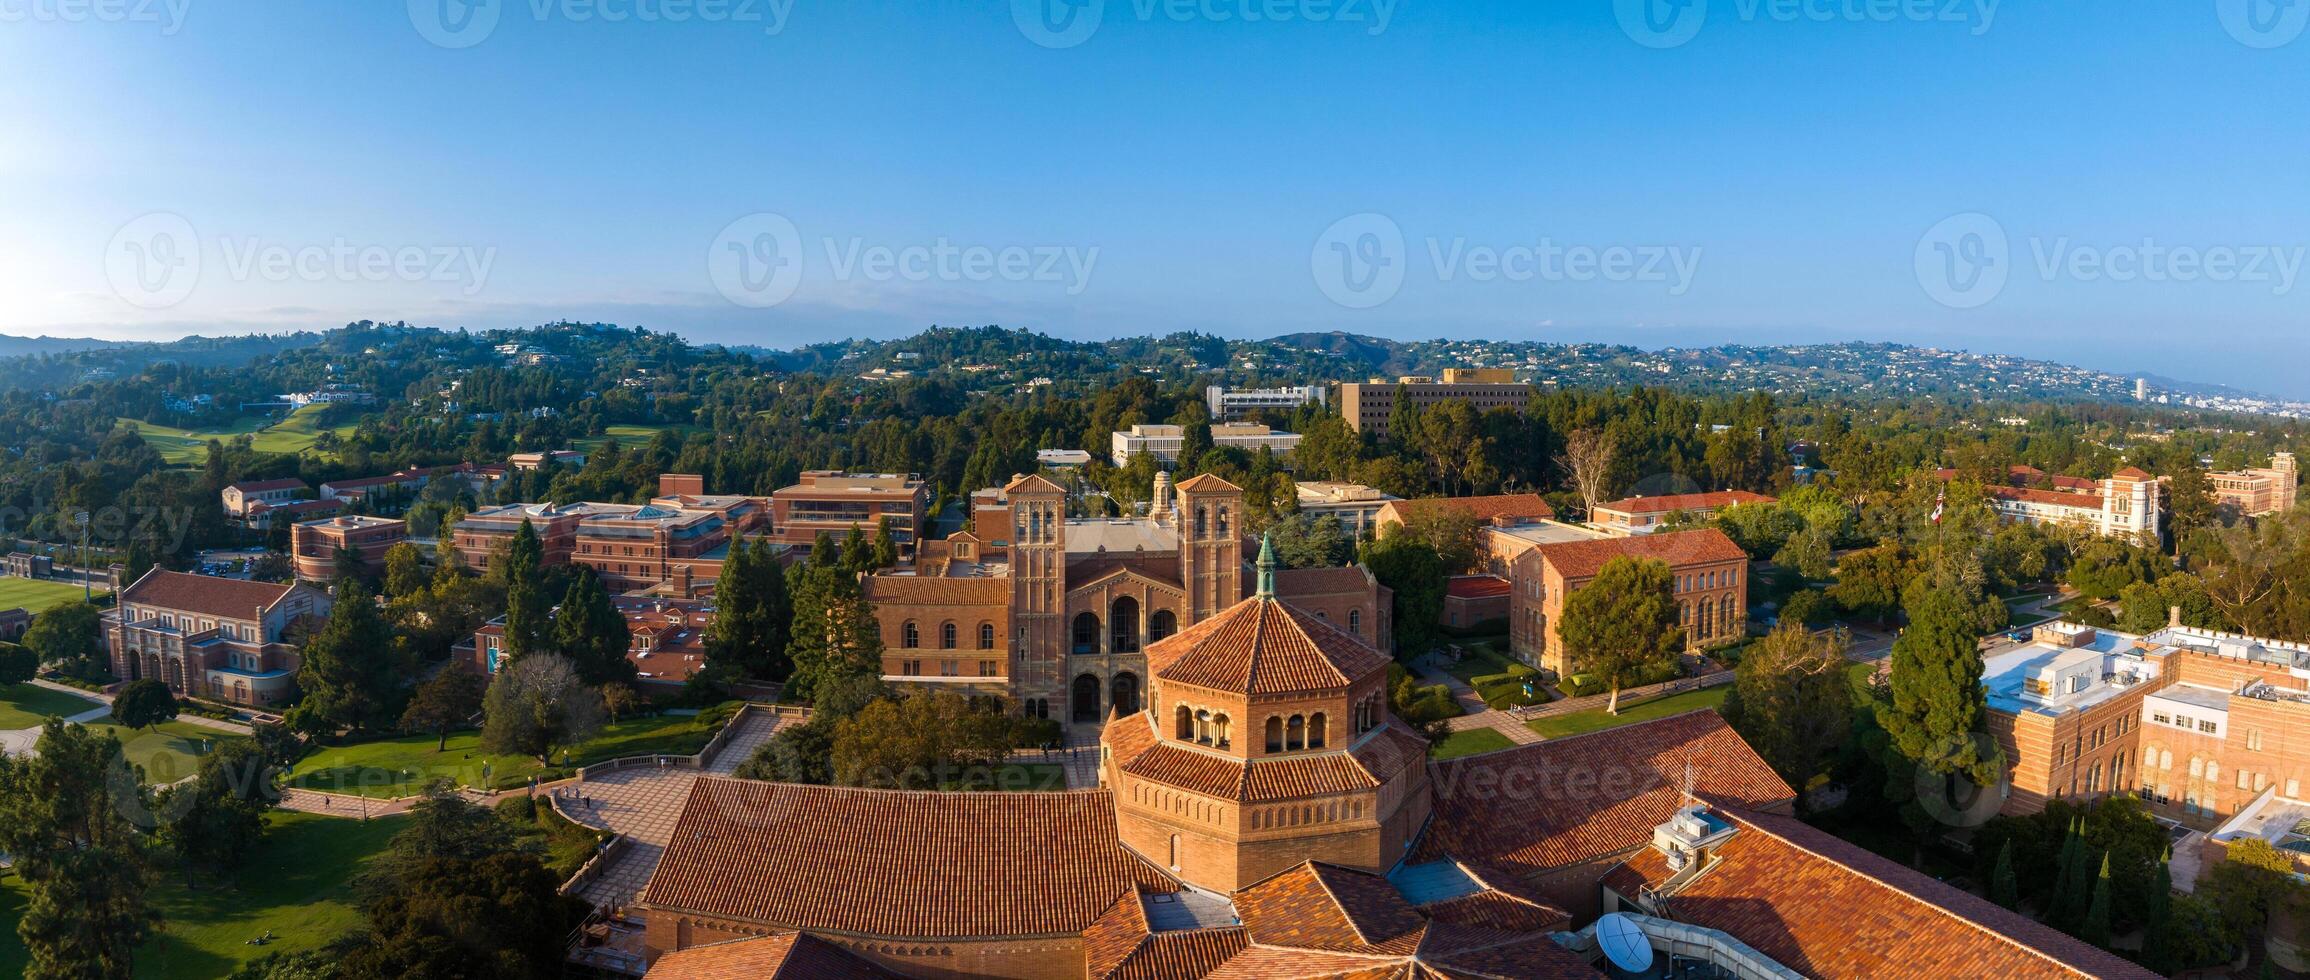 aereo Visualizza di sereno ucla città universitaria con Gotico e moderno architettura su soleggiato giorno nel Westwood, los angeles foto